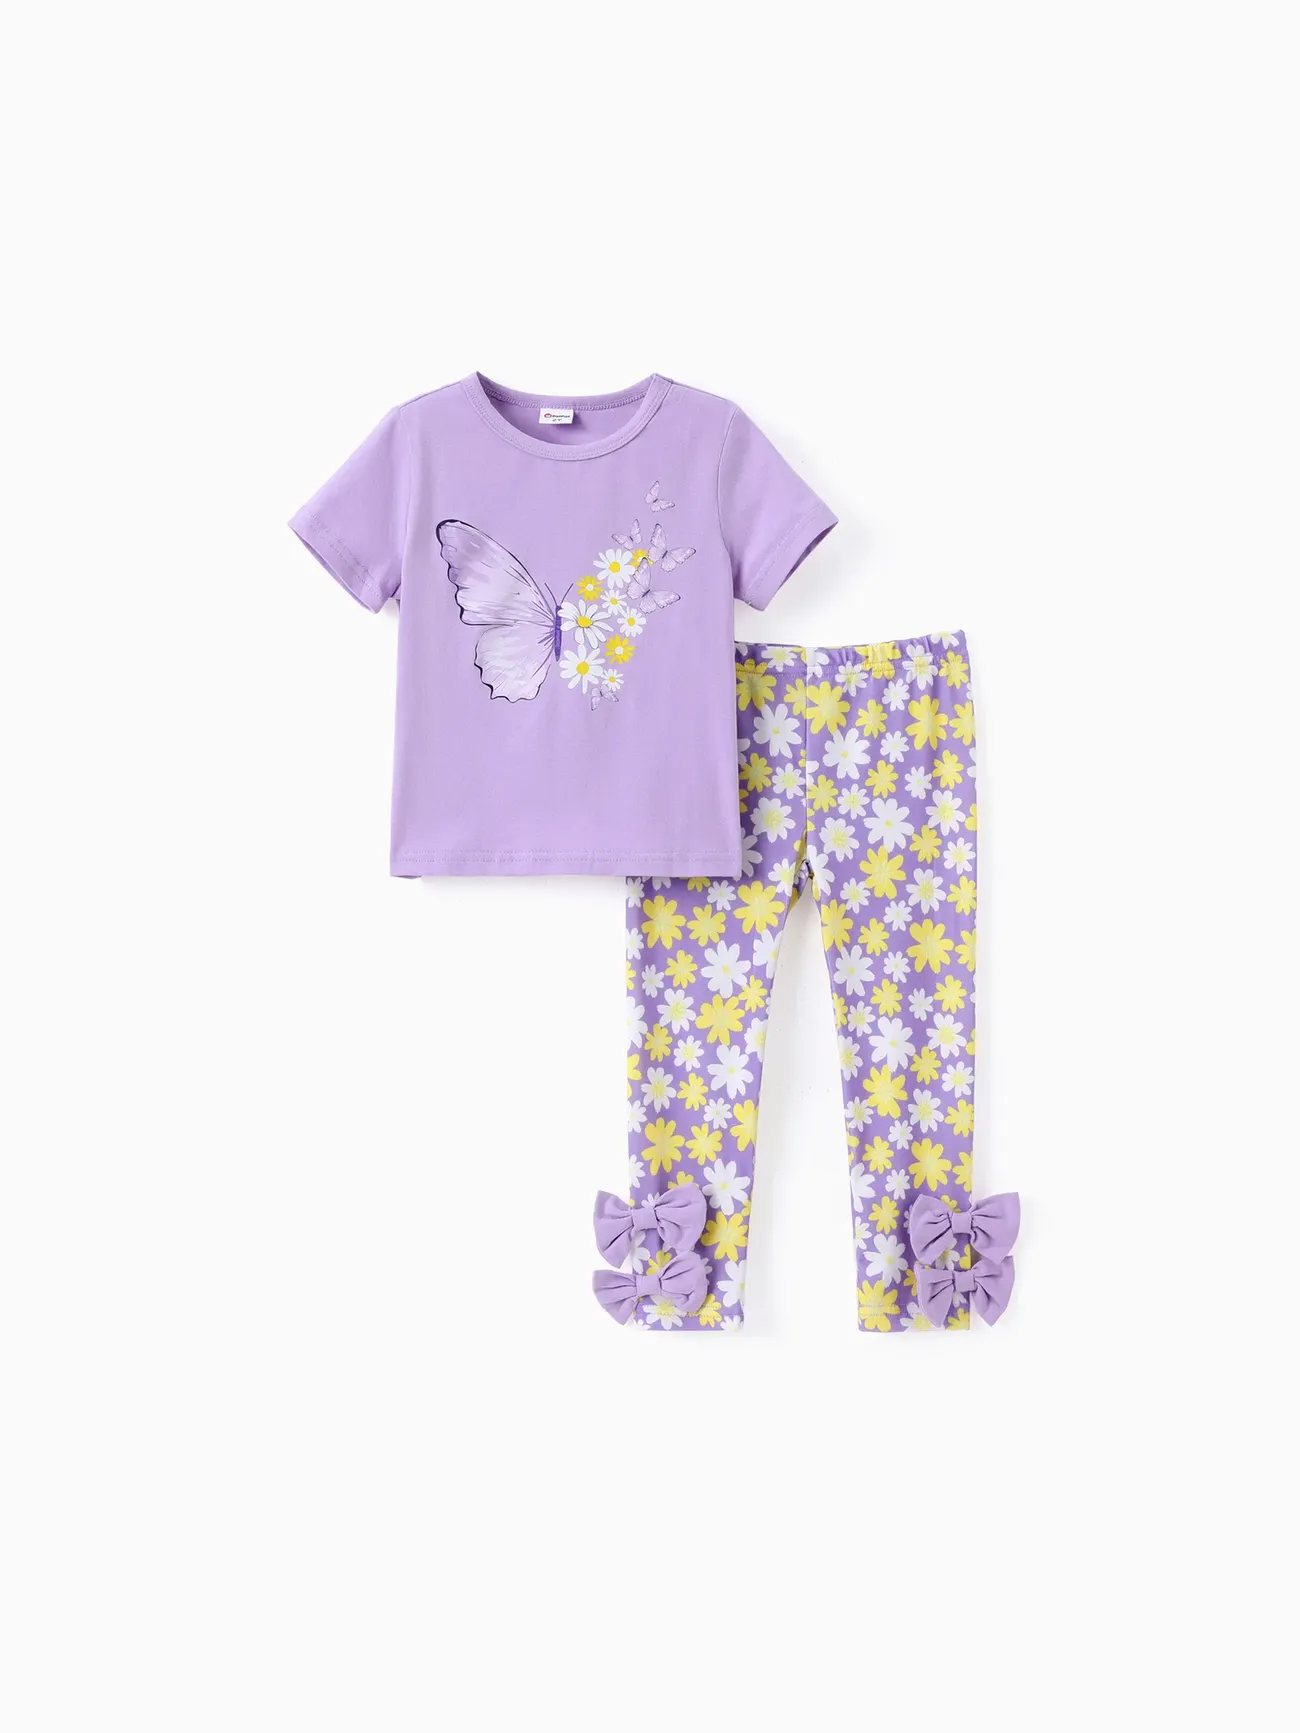 Toddler/Kid Girl 2pcs Tee Sweet Butterfly Print e Little Daisy Leggings Set Roxa big image 1